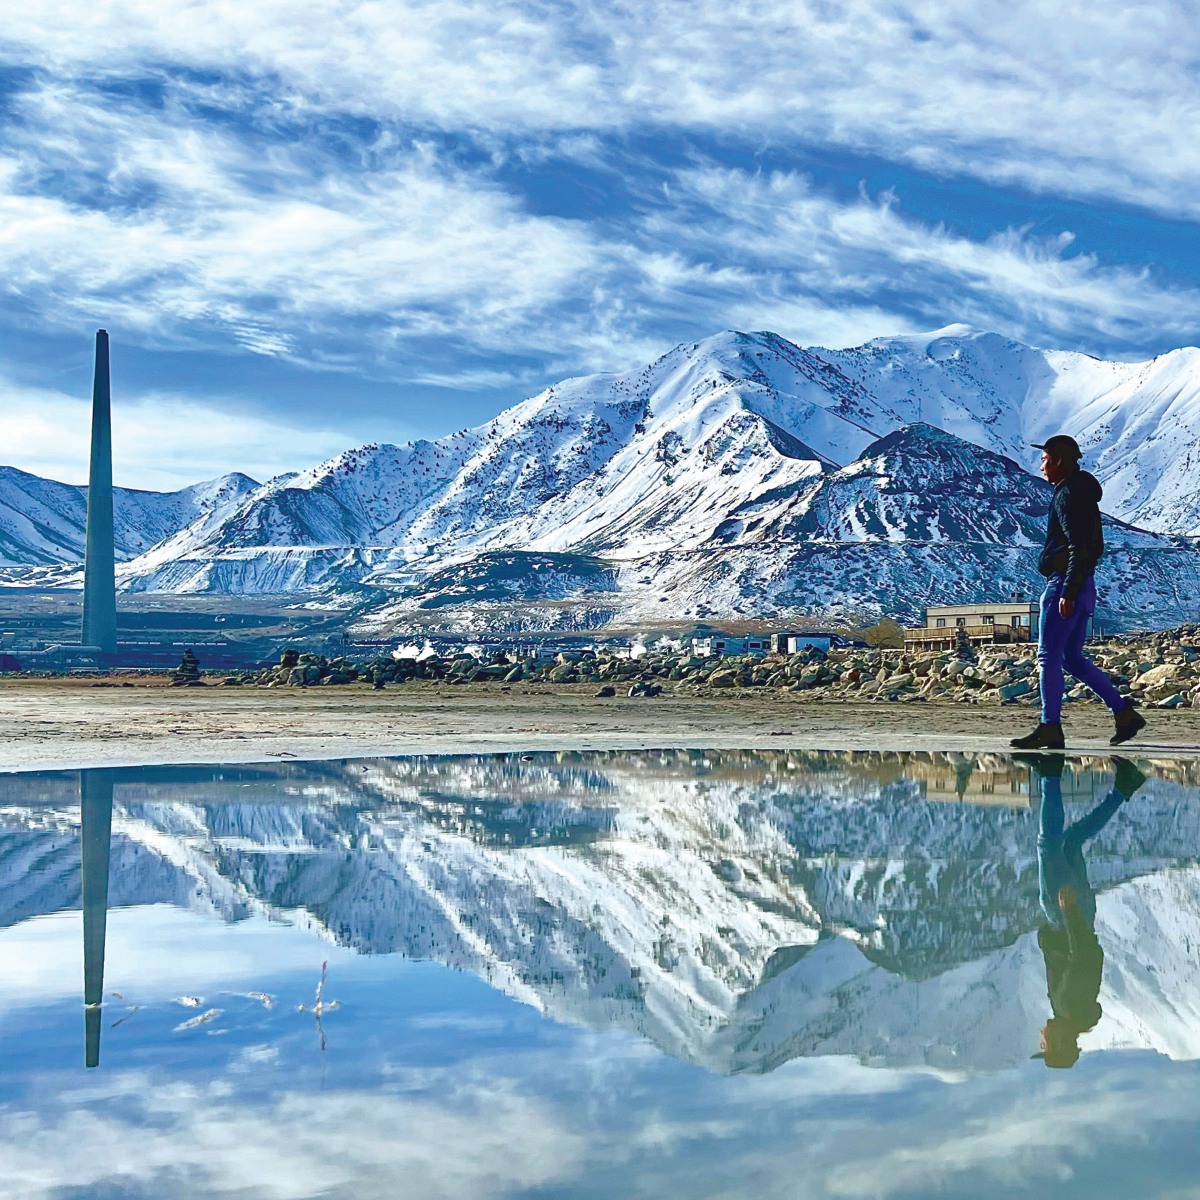 TASIK air masin Great Salt Lake destinasi pelancongan cukup popular di Salt Lake City selain lokasi bermain ski.